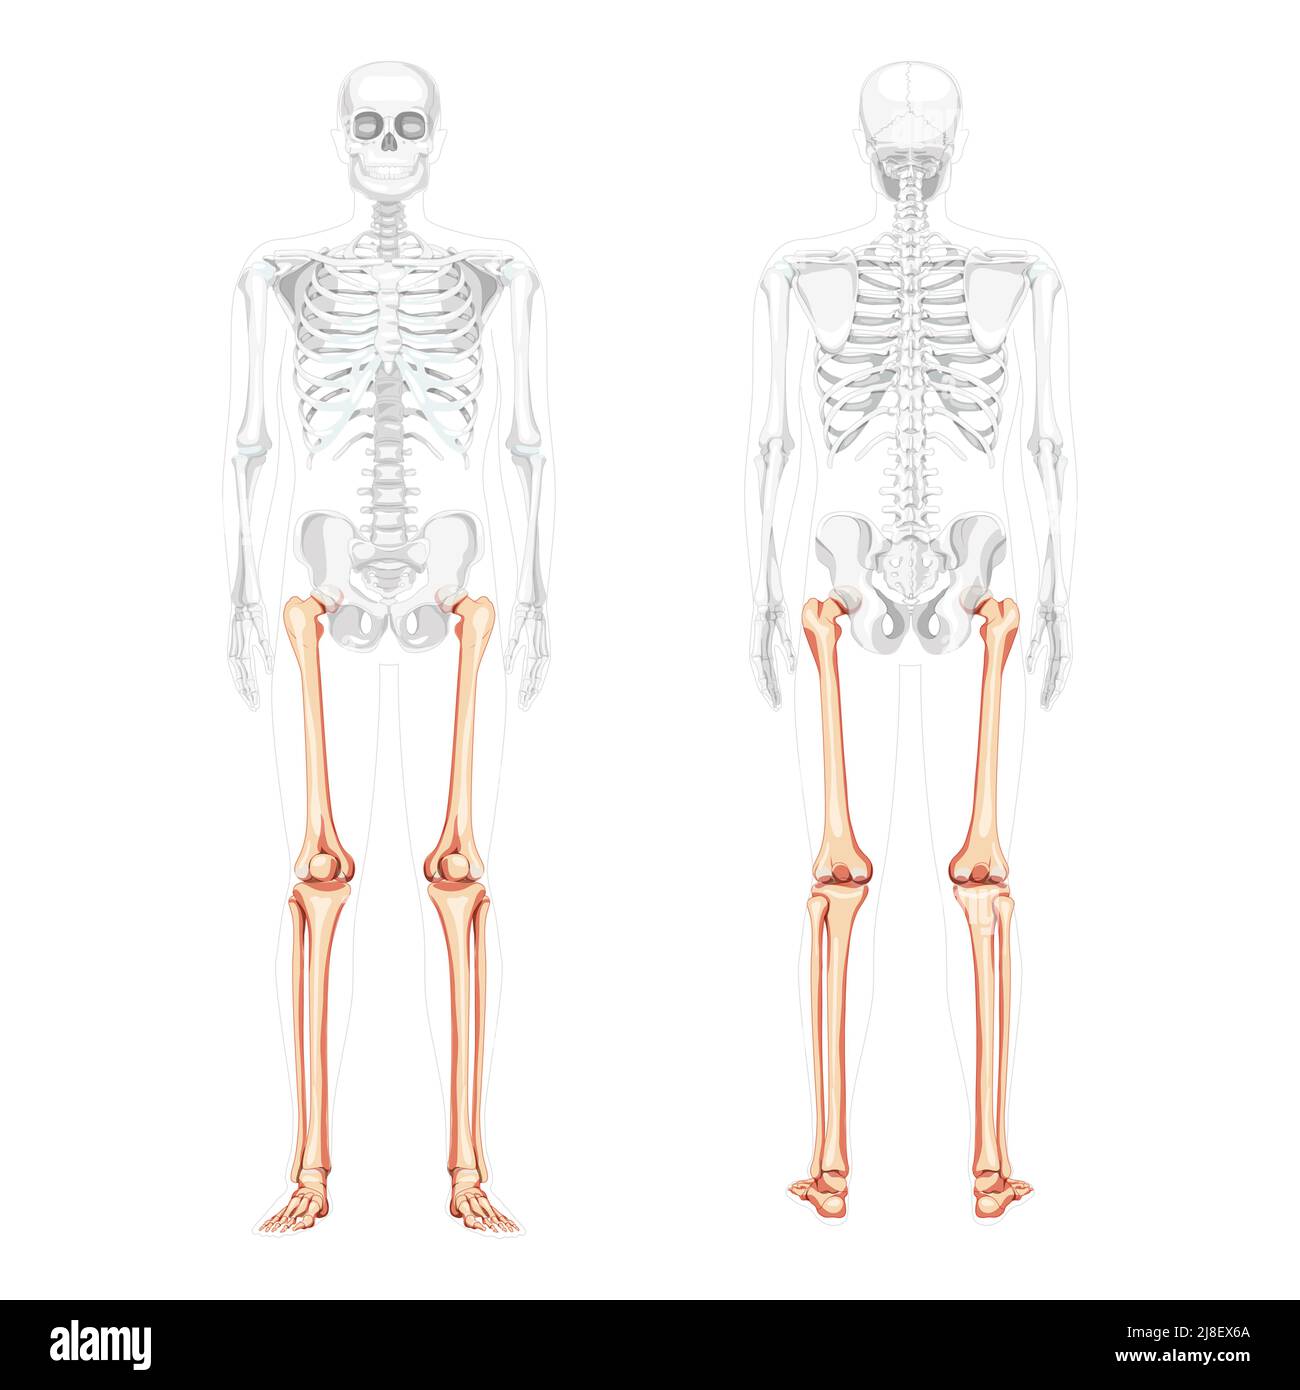 Squelette cuisses et jambes membre inférieur vue du dos avant humaine avec position des os partiellement transparente. Péroné, tibia, pied concept plat réaliste Illustration vectorielle de l'anatomie isolée sur fond blanc Illustration de Vecteur